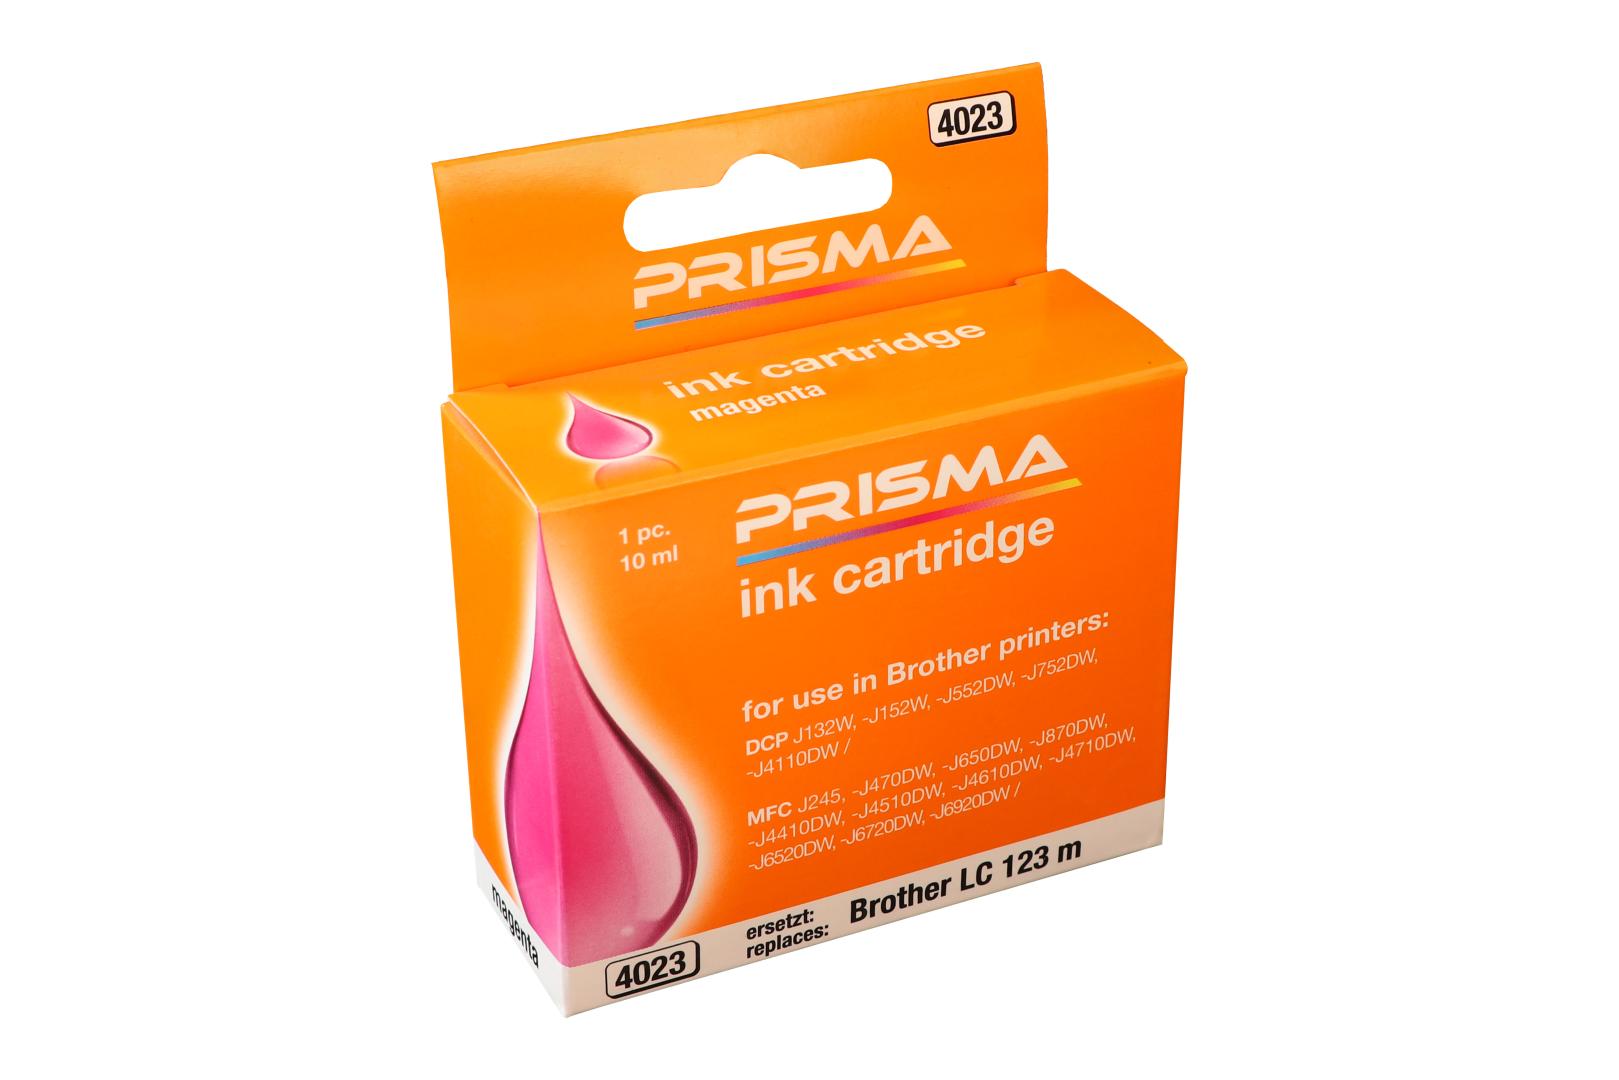 PRISMA 4023 Druckerpatrone für Brother Tintenstrahldrucker, magenta, 10 ml